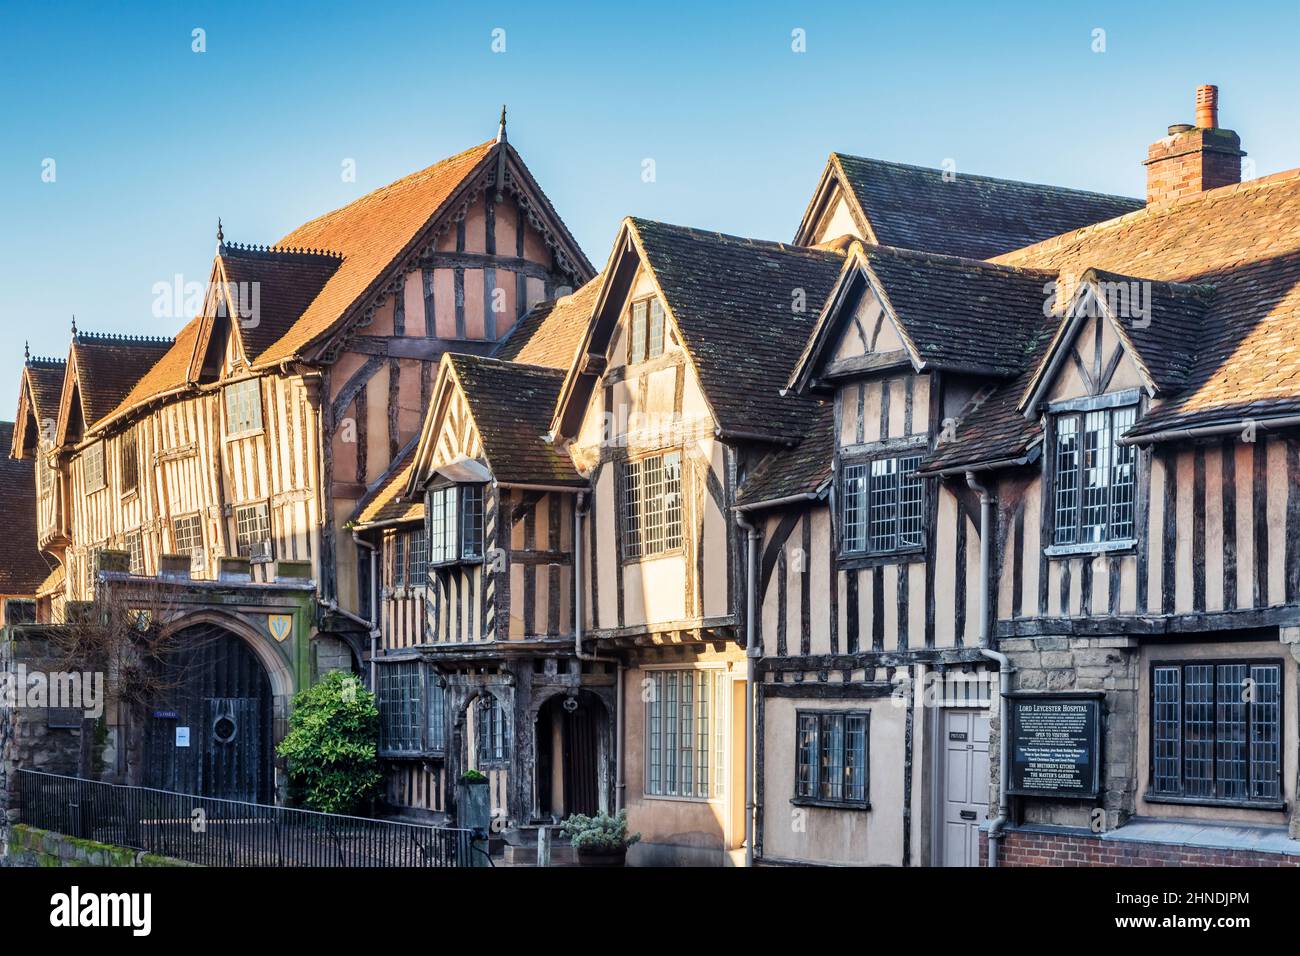 17 janvier 2022: Warwick, Royaume-Uni - l'hôpital Lord Leycester, une collection de bâtiments construits entre les 13th et 17th siècles, est une... Banque D'Images